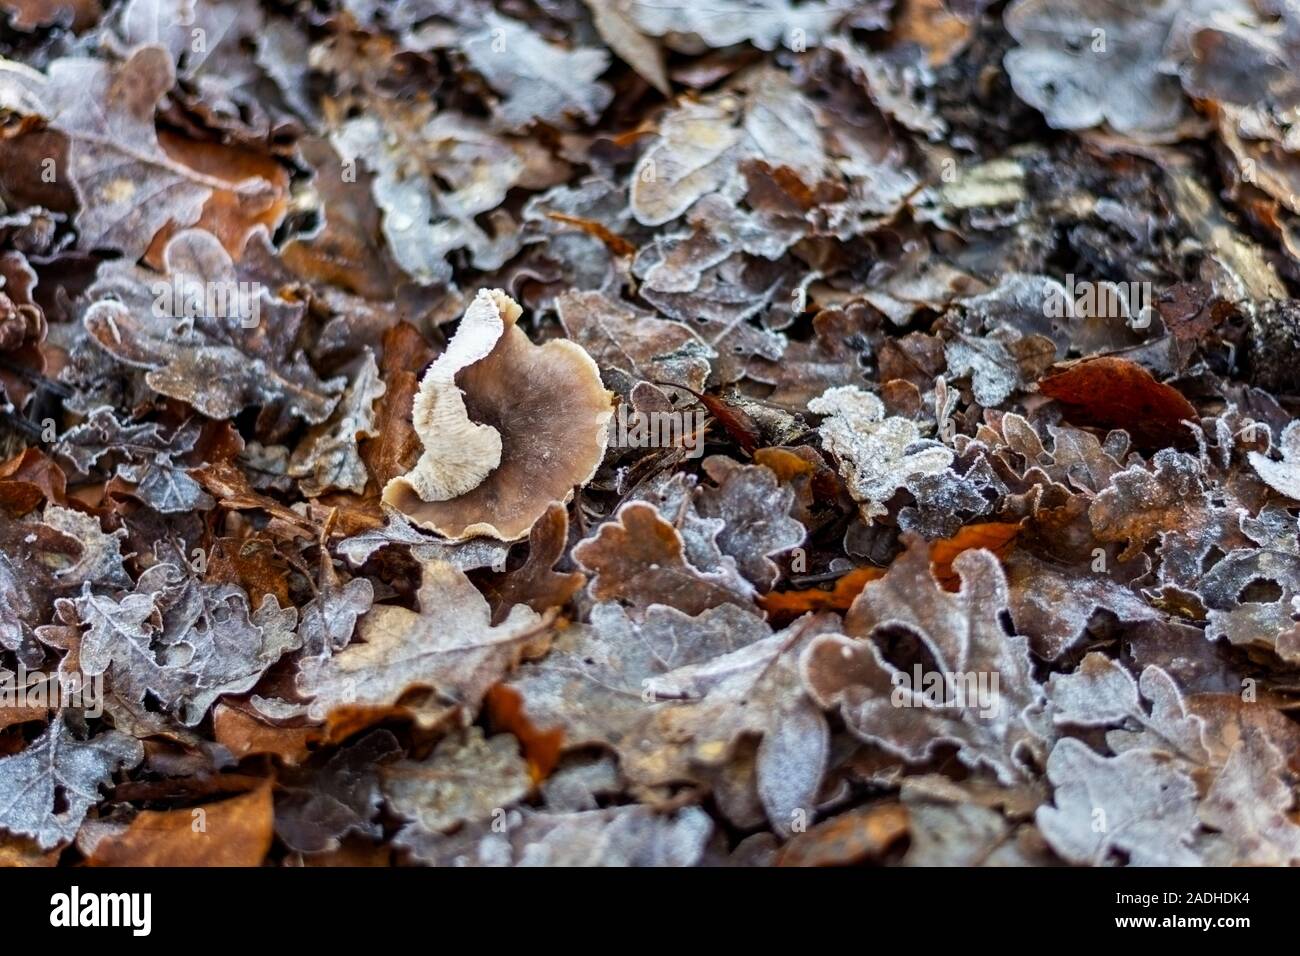 Les feuilles en décomposition sur un plancher de bois avec un champignon poussant parmi eux Banque D'Images